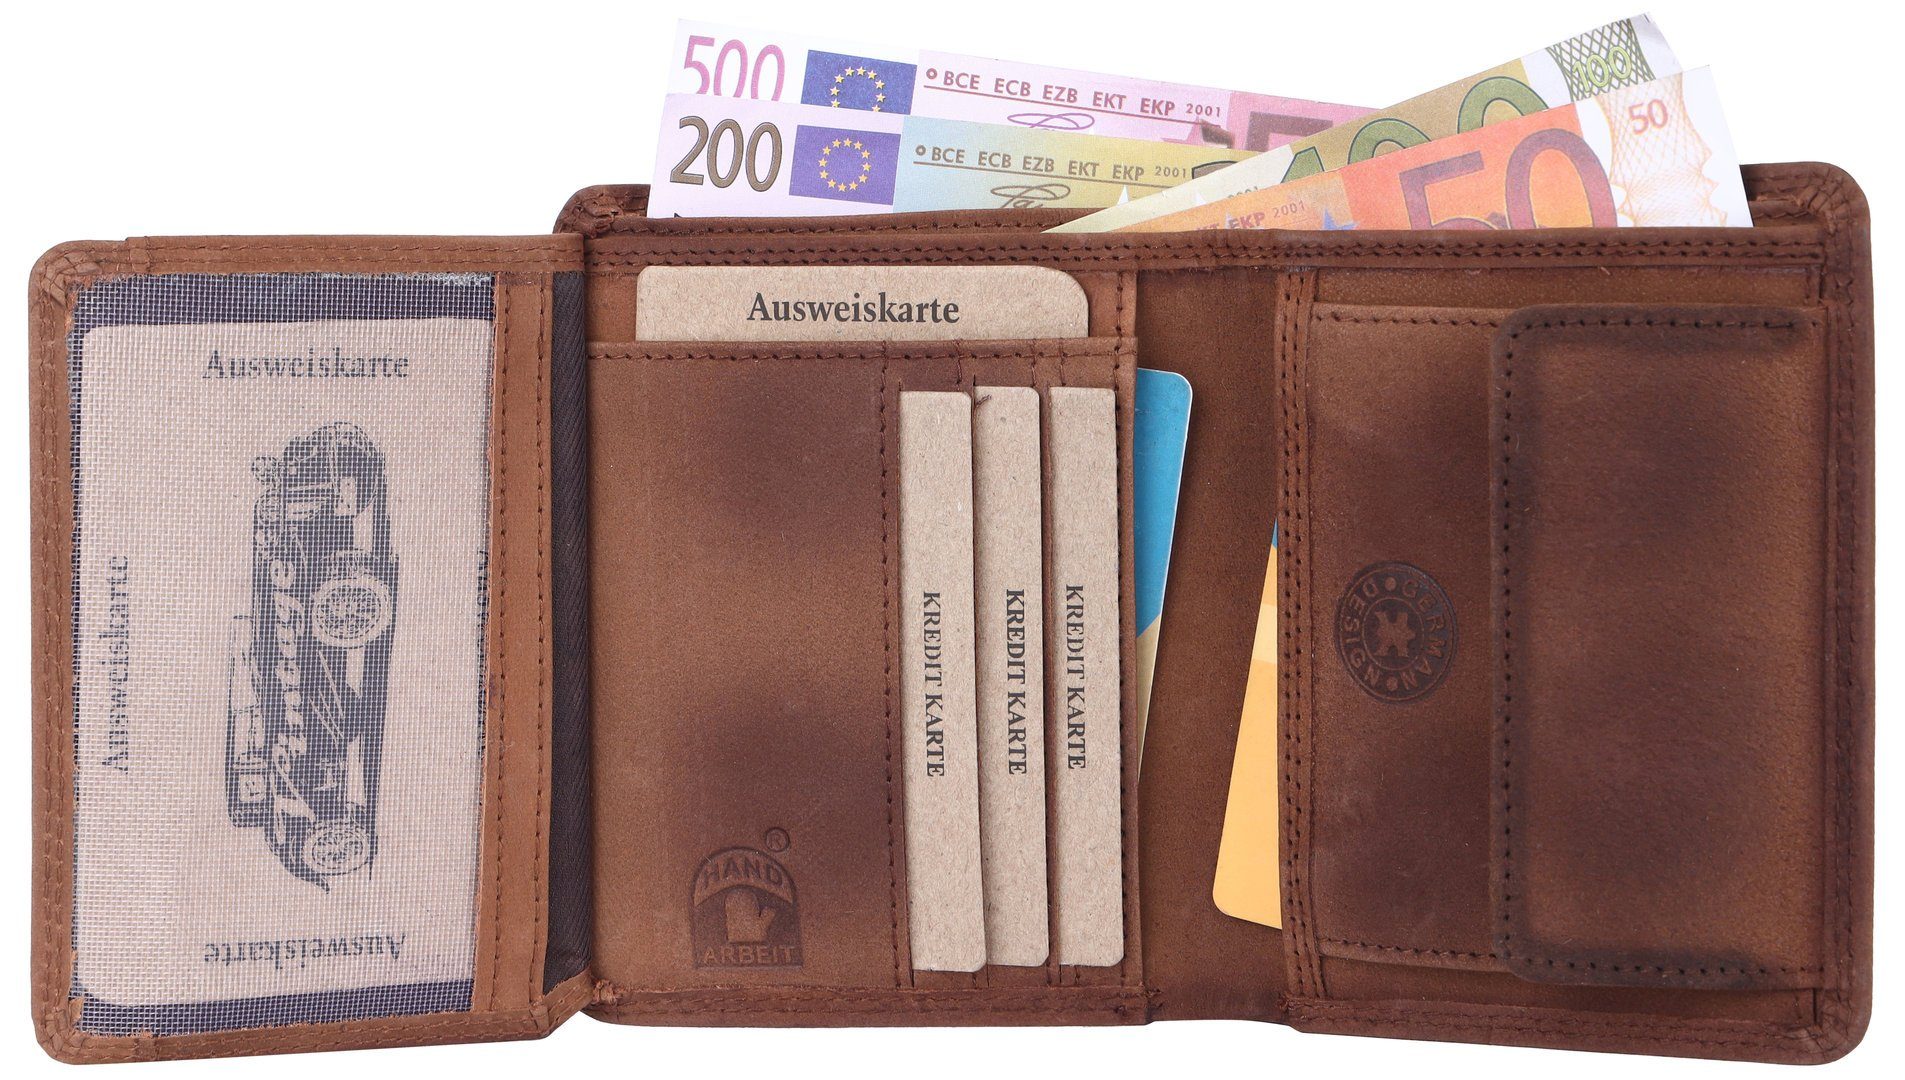 SHG Geldbörse Leder RFID Münzfach Männerbörse mit Brieftasche Börse Herren Schutz Portemonnaie, Büffelleder Kette Lederbörse mit